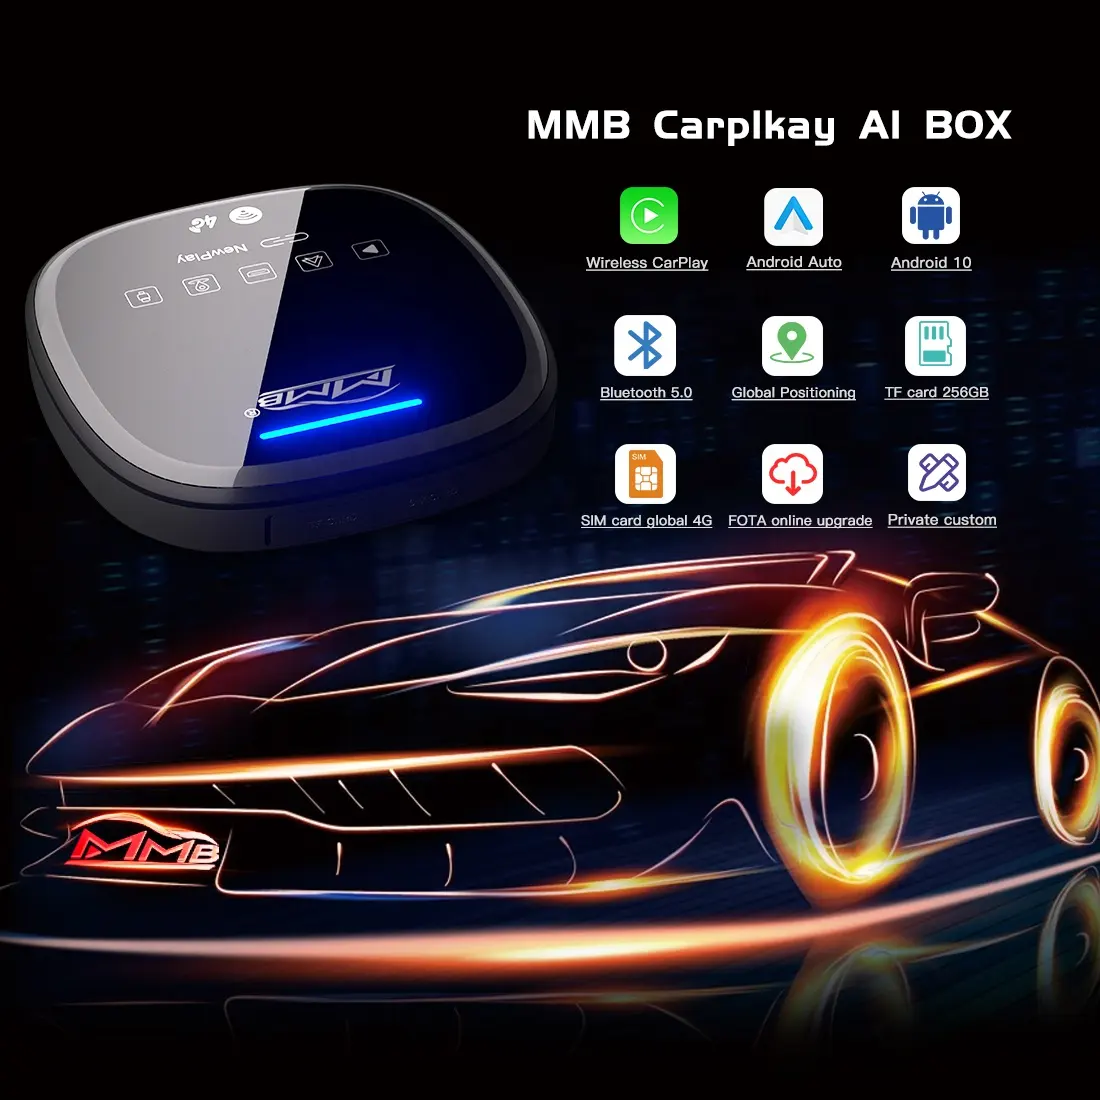 Joyeauto Bộ Chuyển Đổi CarPlay Không Dây MMB Carplay Ai Box Android 10 Carplay 4 + 64GB Kèm Thẻ SIM